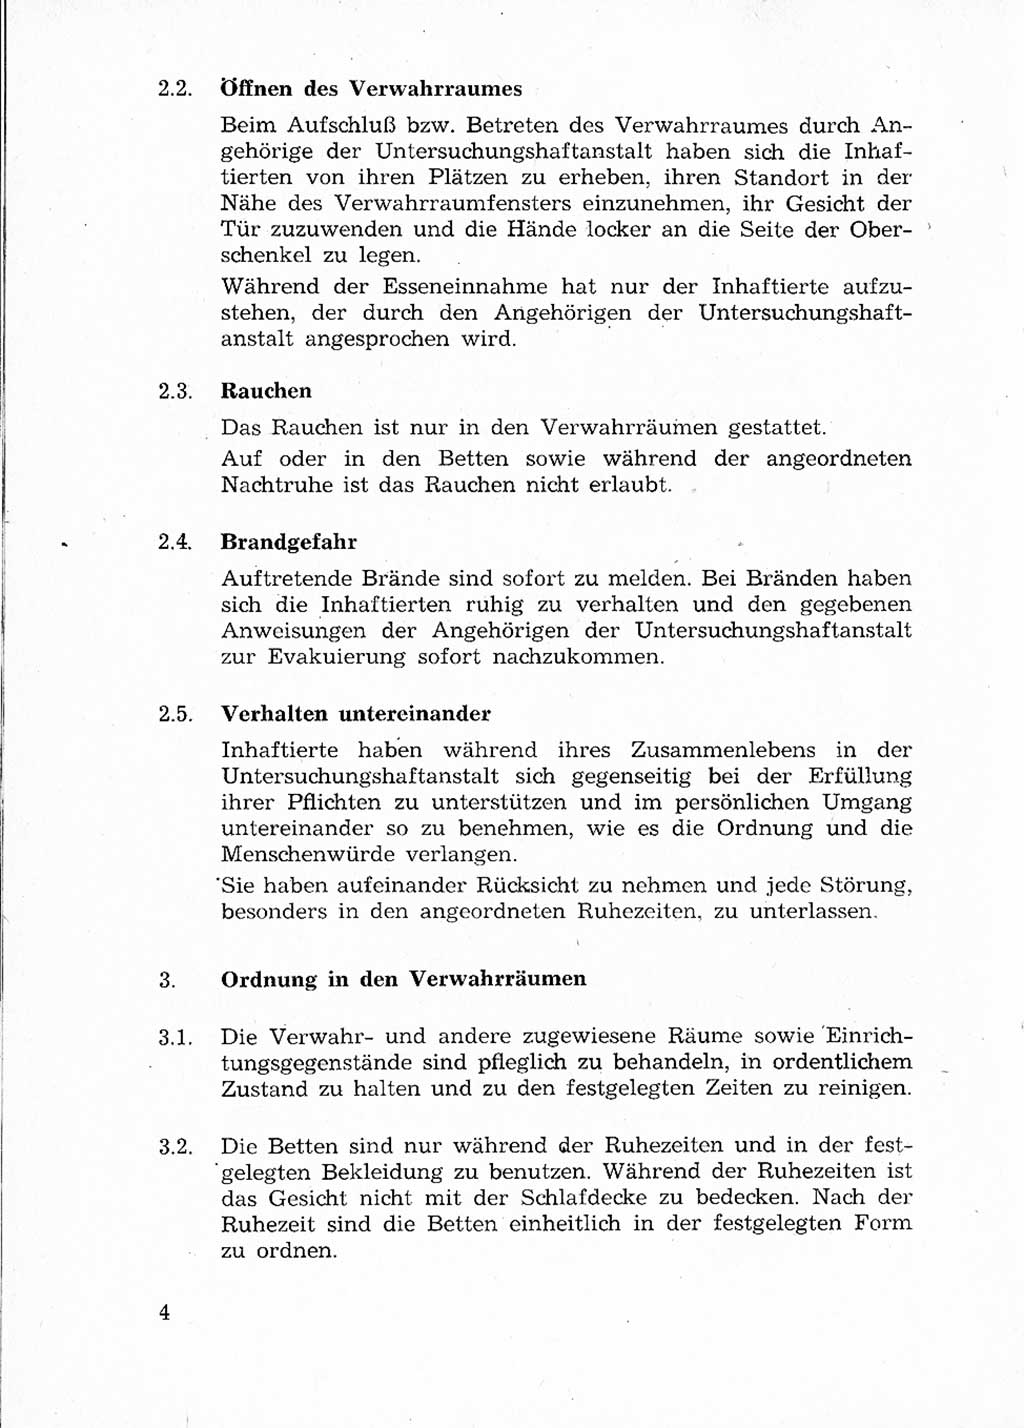 Ordnungs- und Verhaltensregeln (Hausordnung) für Inhaftierte in den Untersuchungshaftanstalten (UHA) [Ministerium für Staatssicherheit (MfS), Deutsche Demokratische Republik (DDR)] 1971, Seite 4 (H.-Ordn. UHA MfS DDR 1971, S. 4)